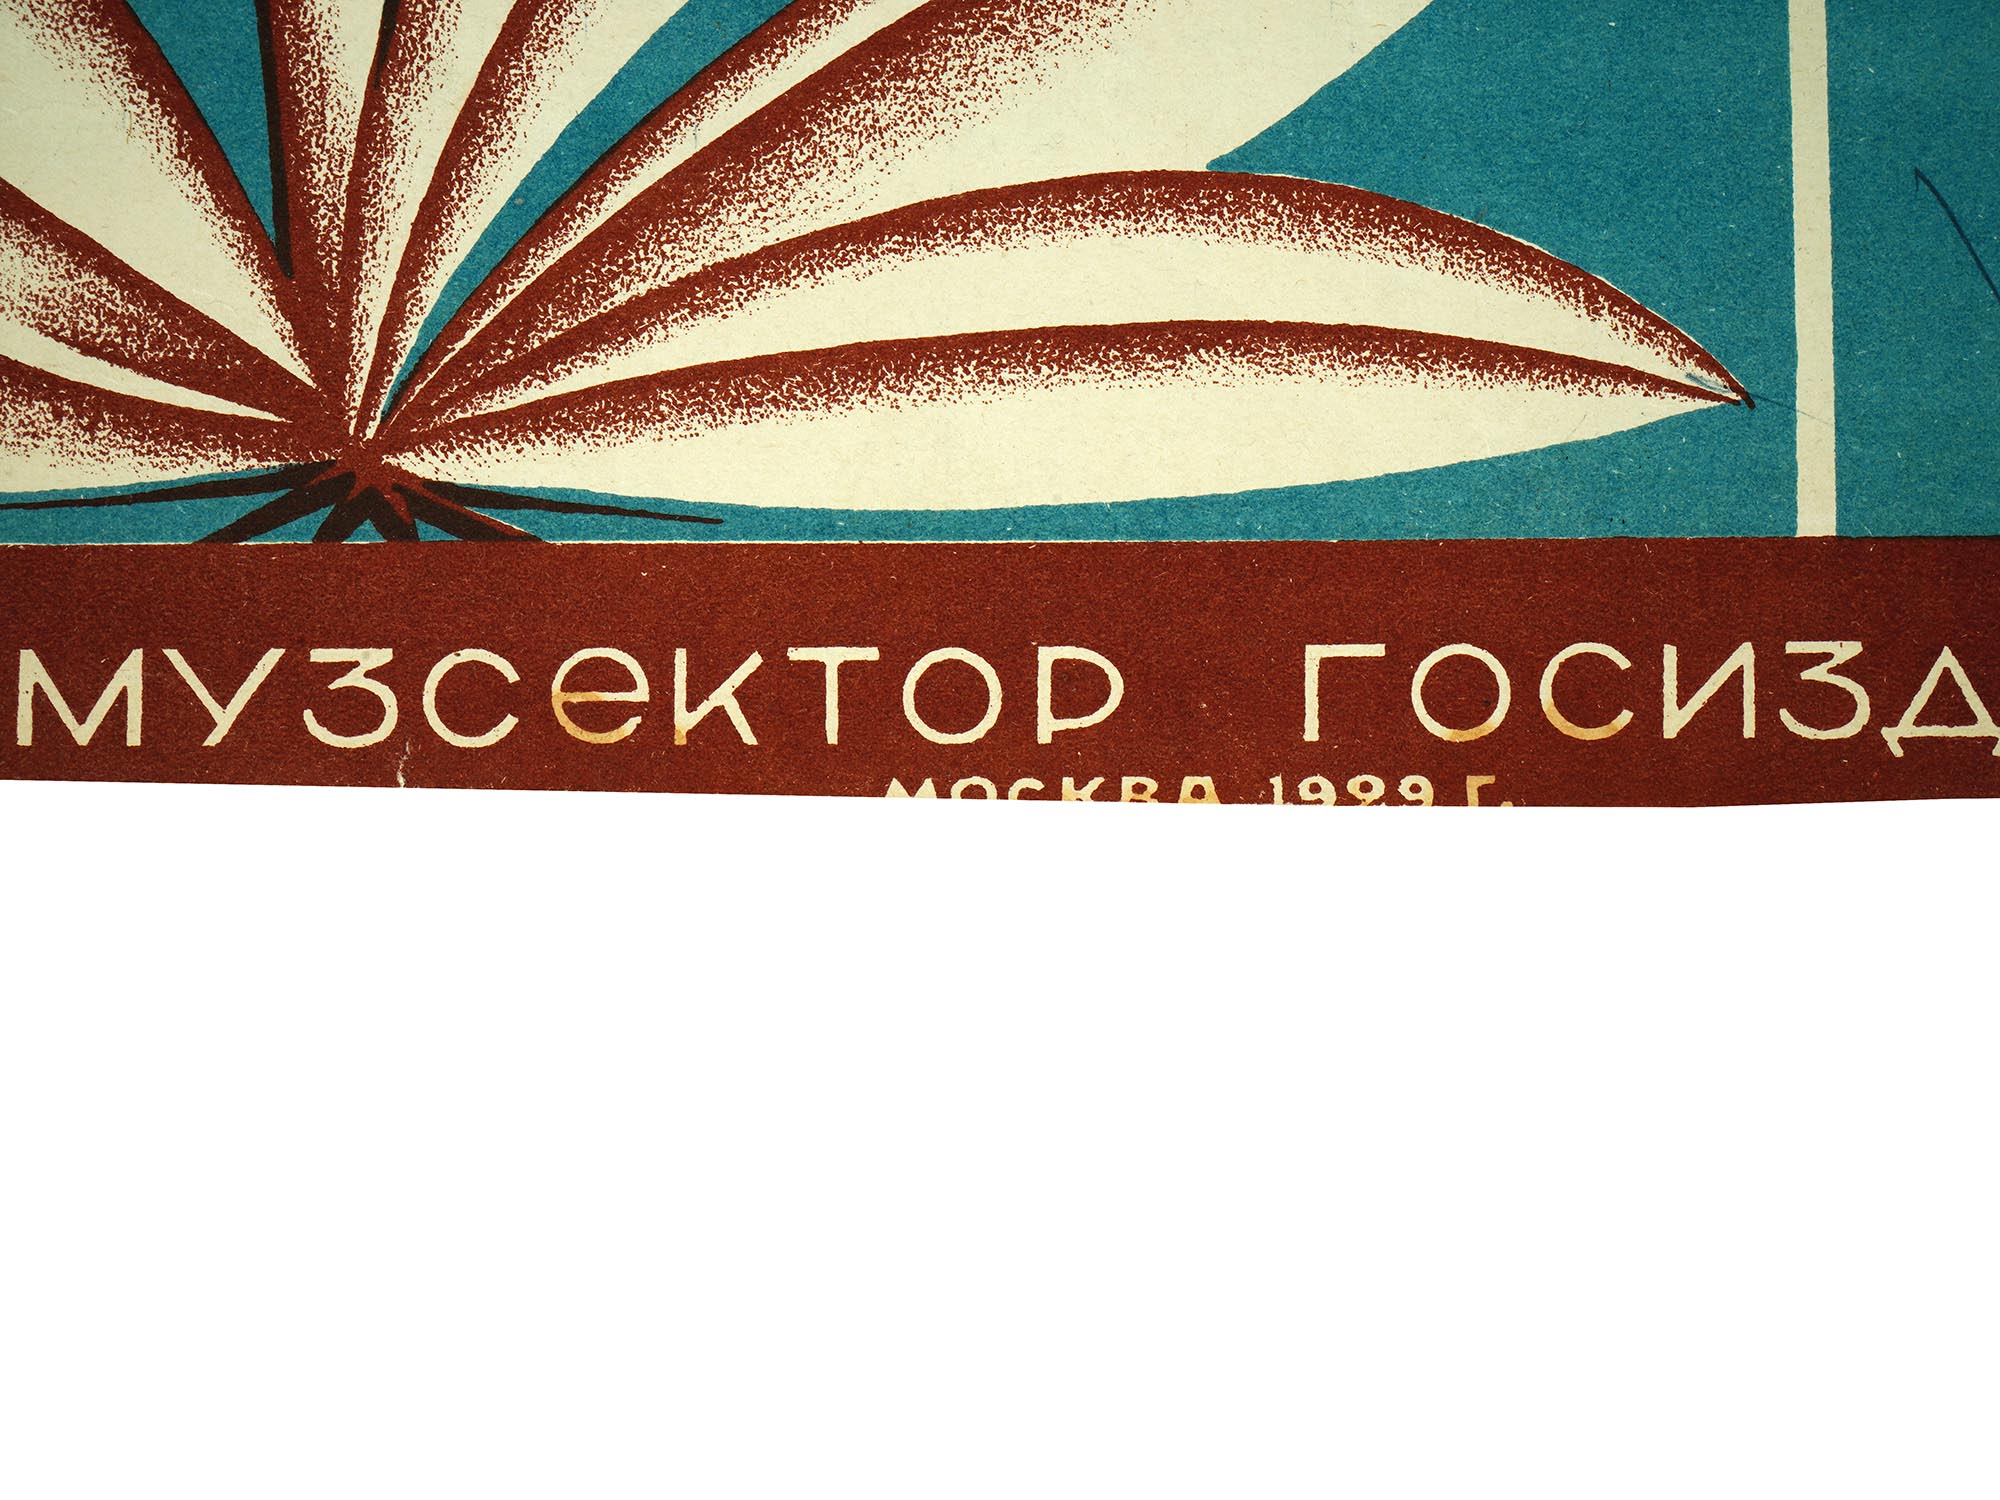 VTG RUSSIAN SOVIET MILTON AGER MUSIC SHEET BROCHURE PIC-3